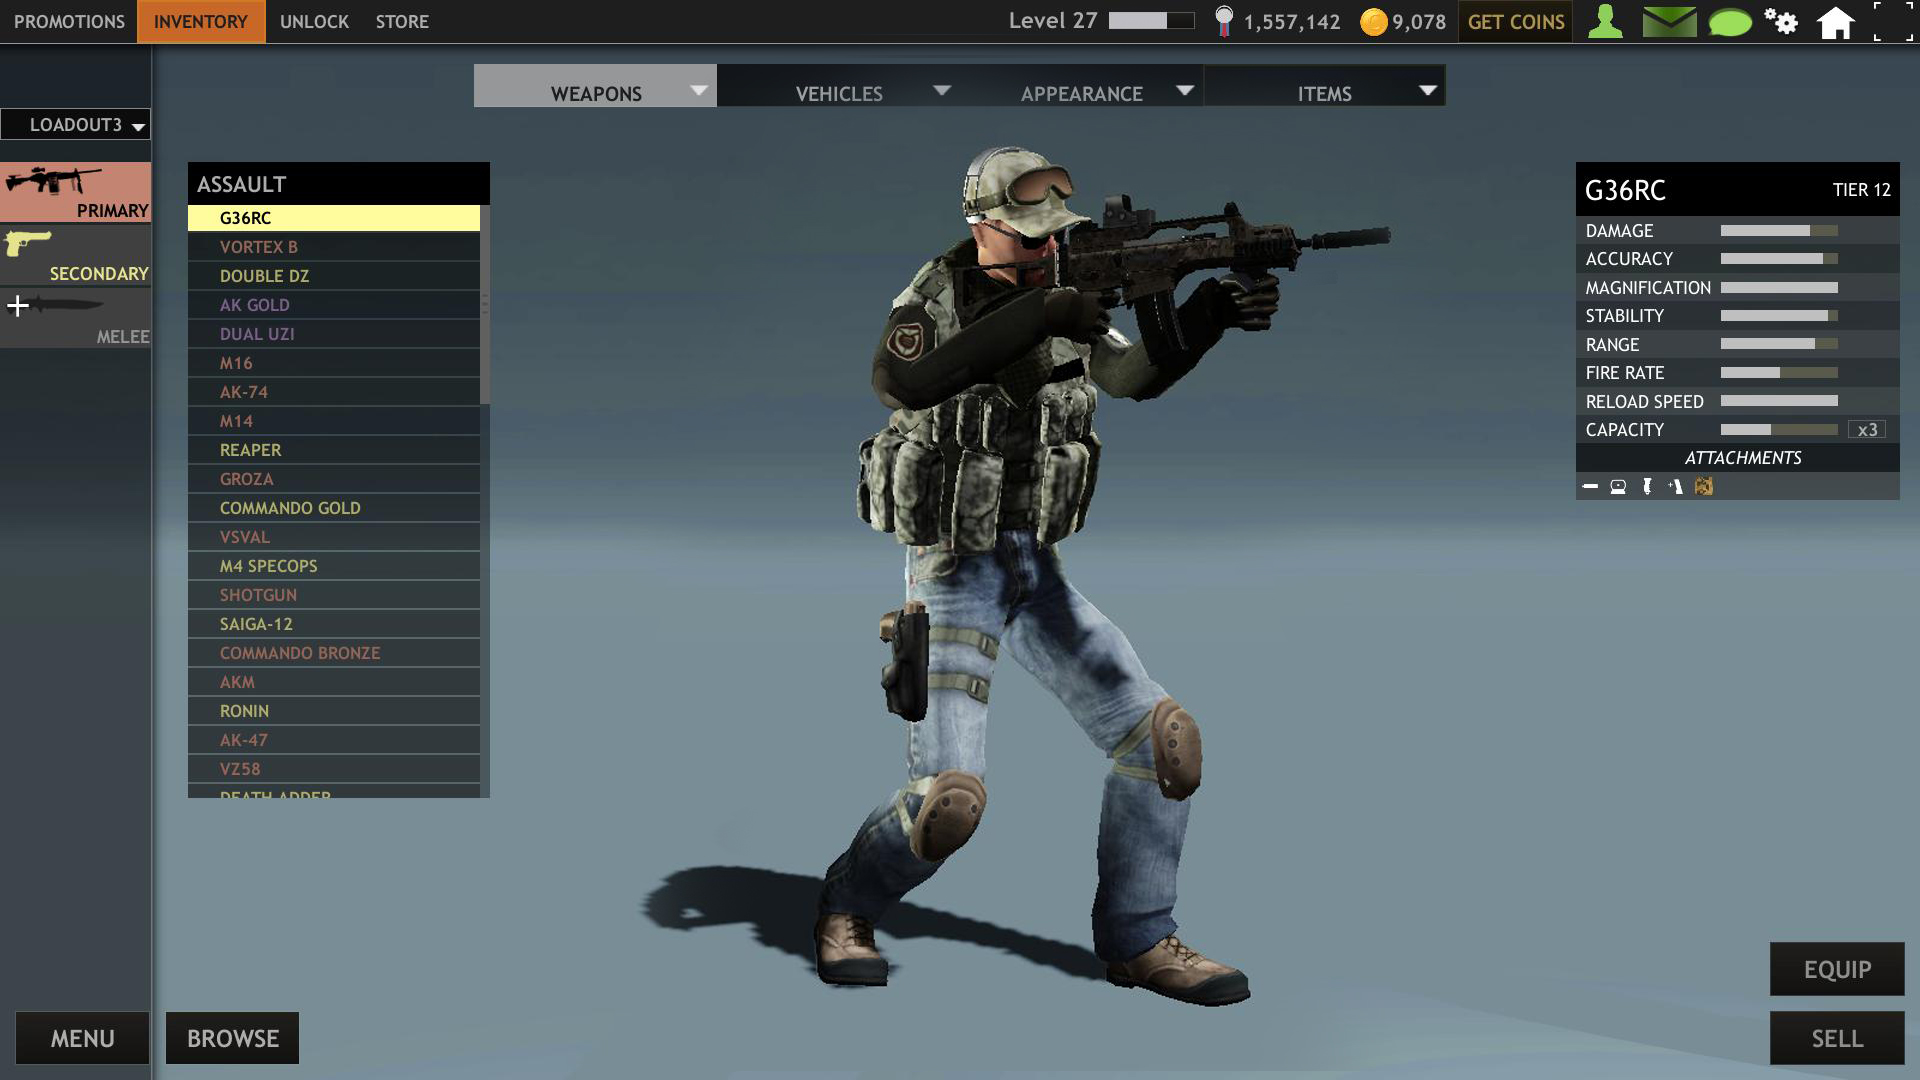 War Trigger 3 screenshot